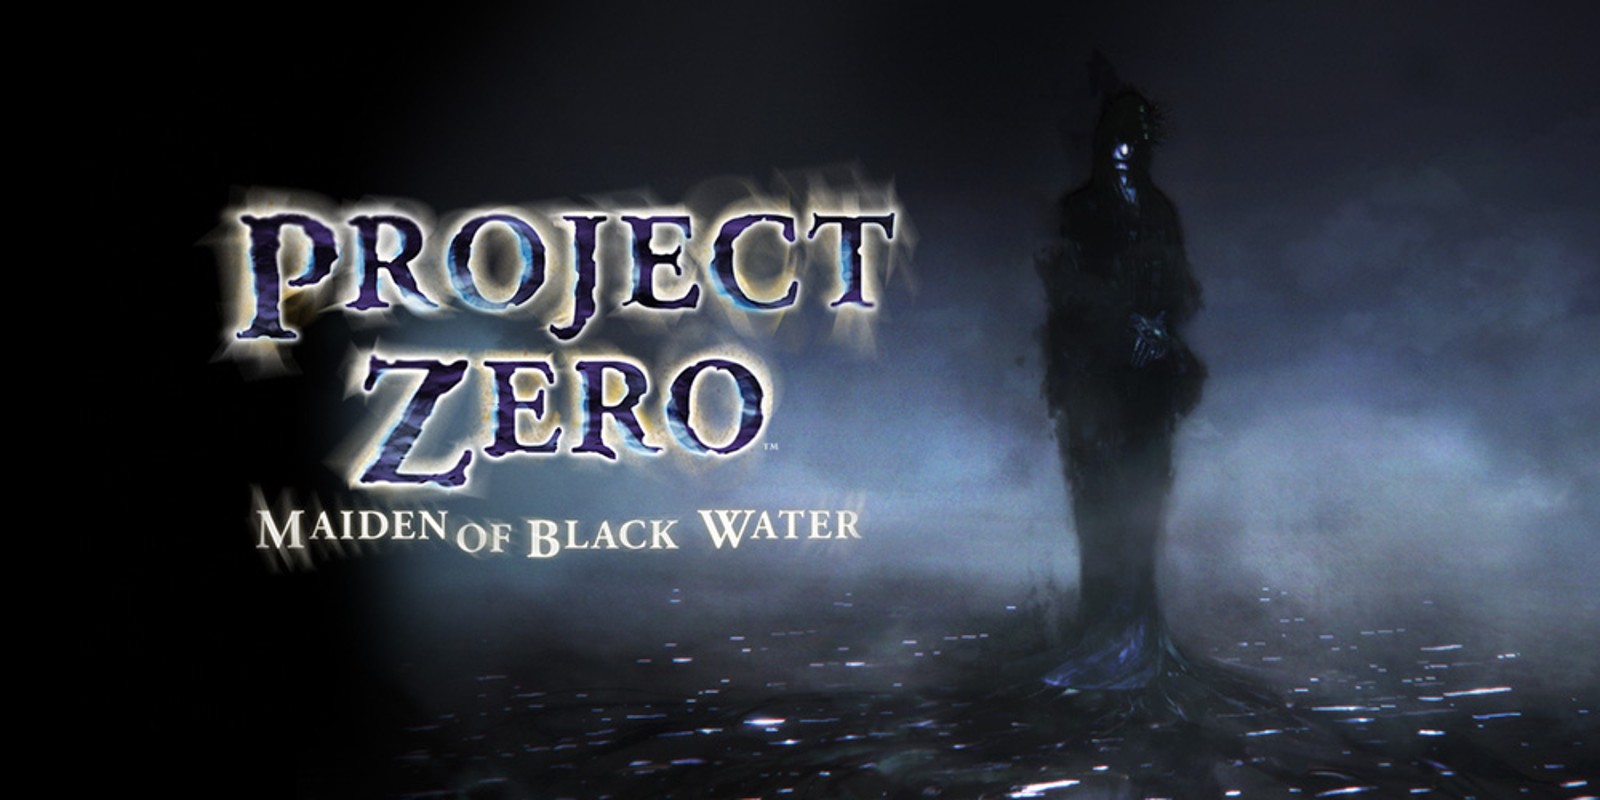 Aprendiz gasolina Saltar Project Zero: Maiden of Black Water | Juegos de Wii U | Juegos | Nintendo